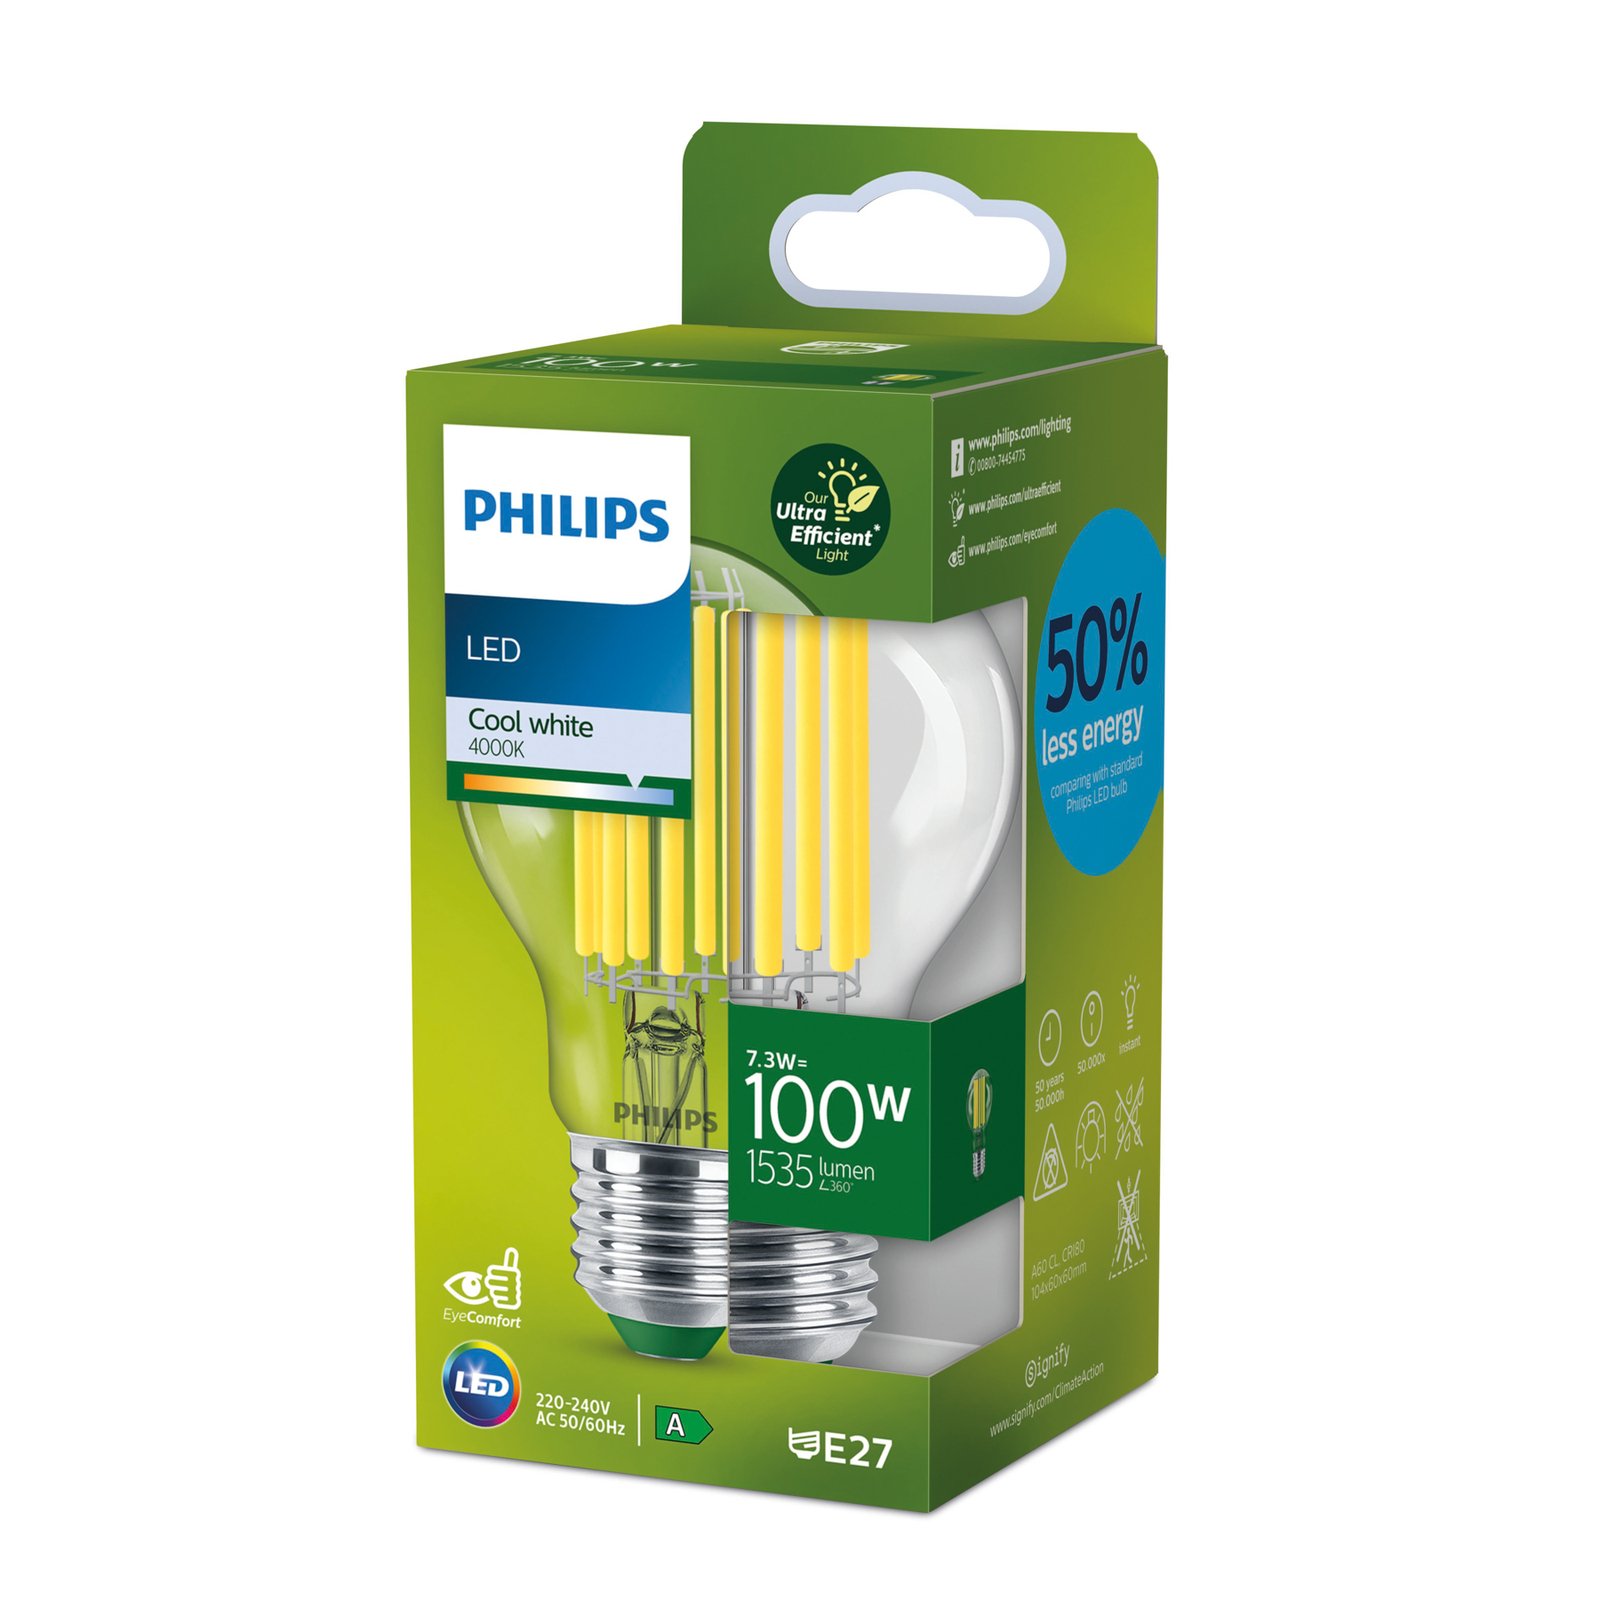 Philips E27 LED izzó A60 7,3W 1535lm 4 000 K